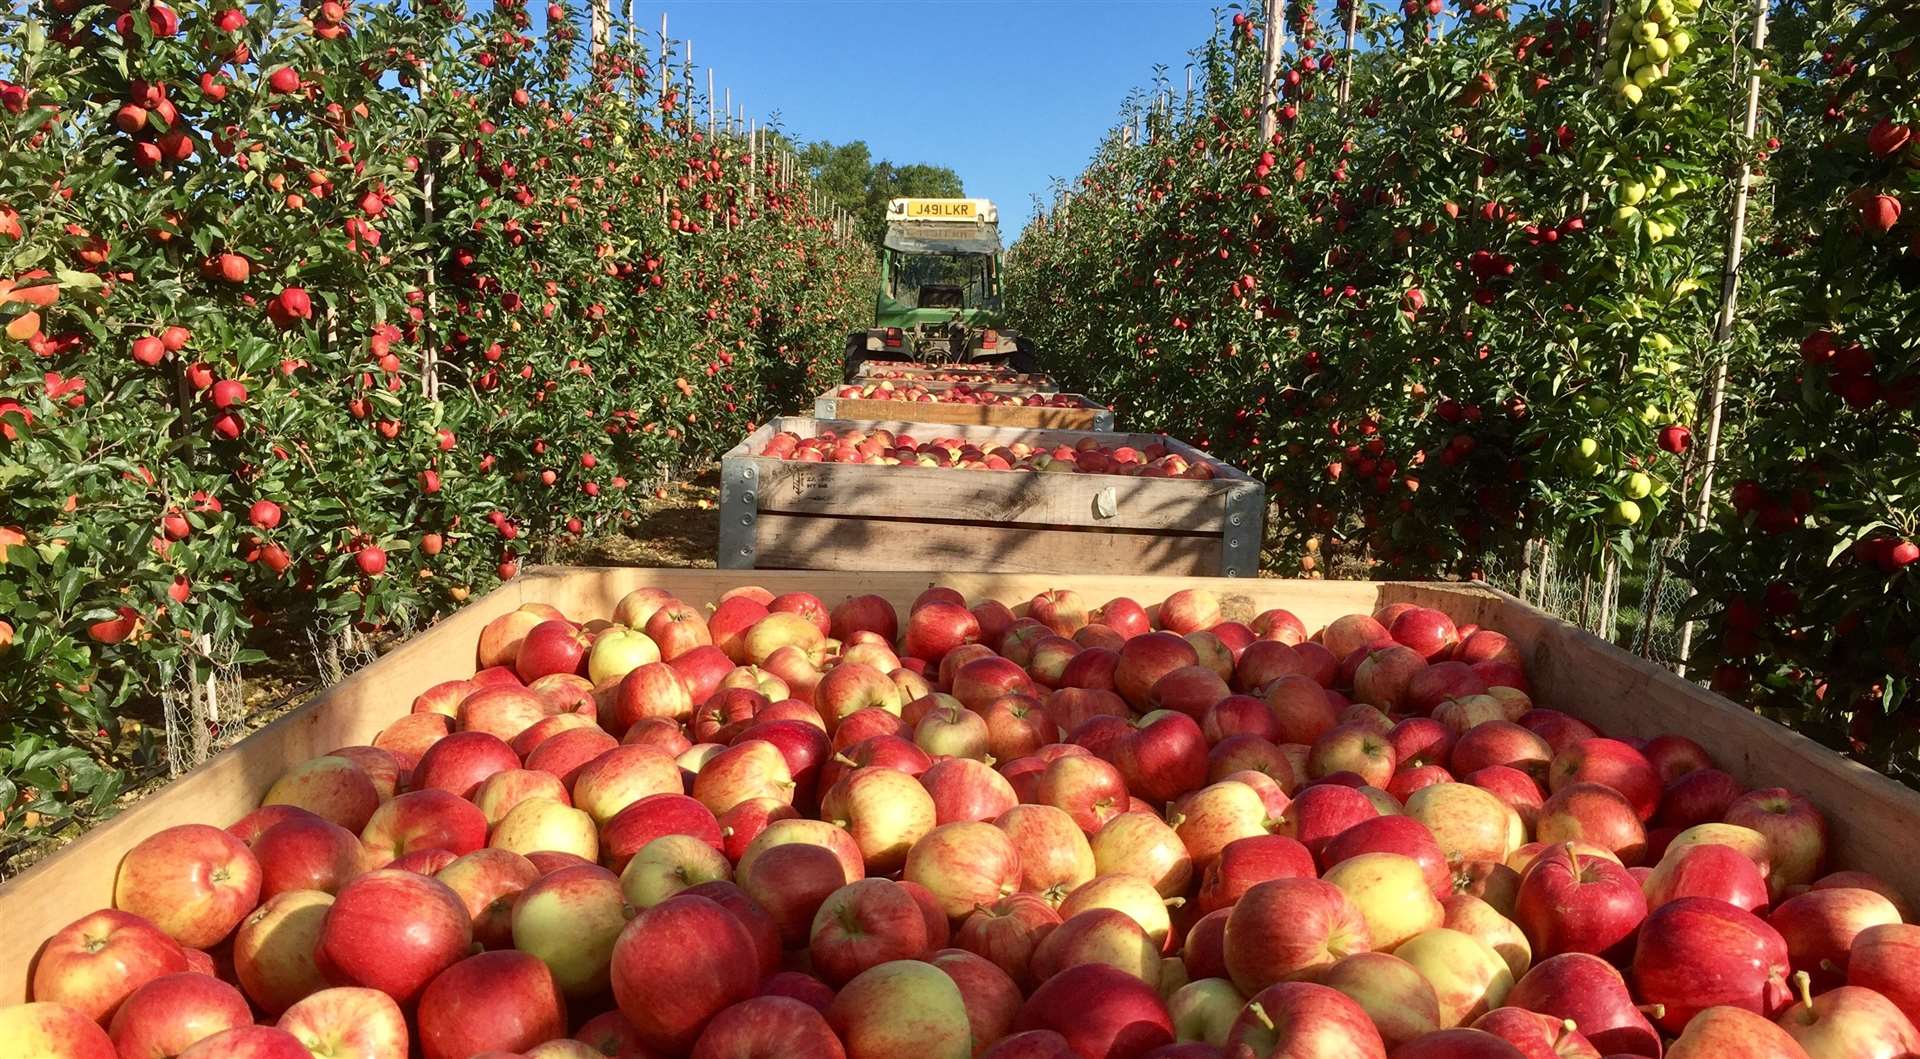 The 2019 Kent apple harvest got underway in August.